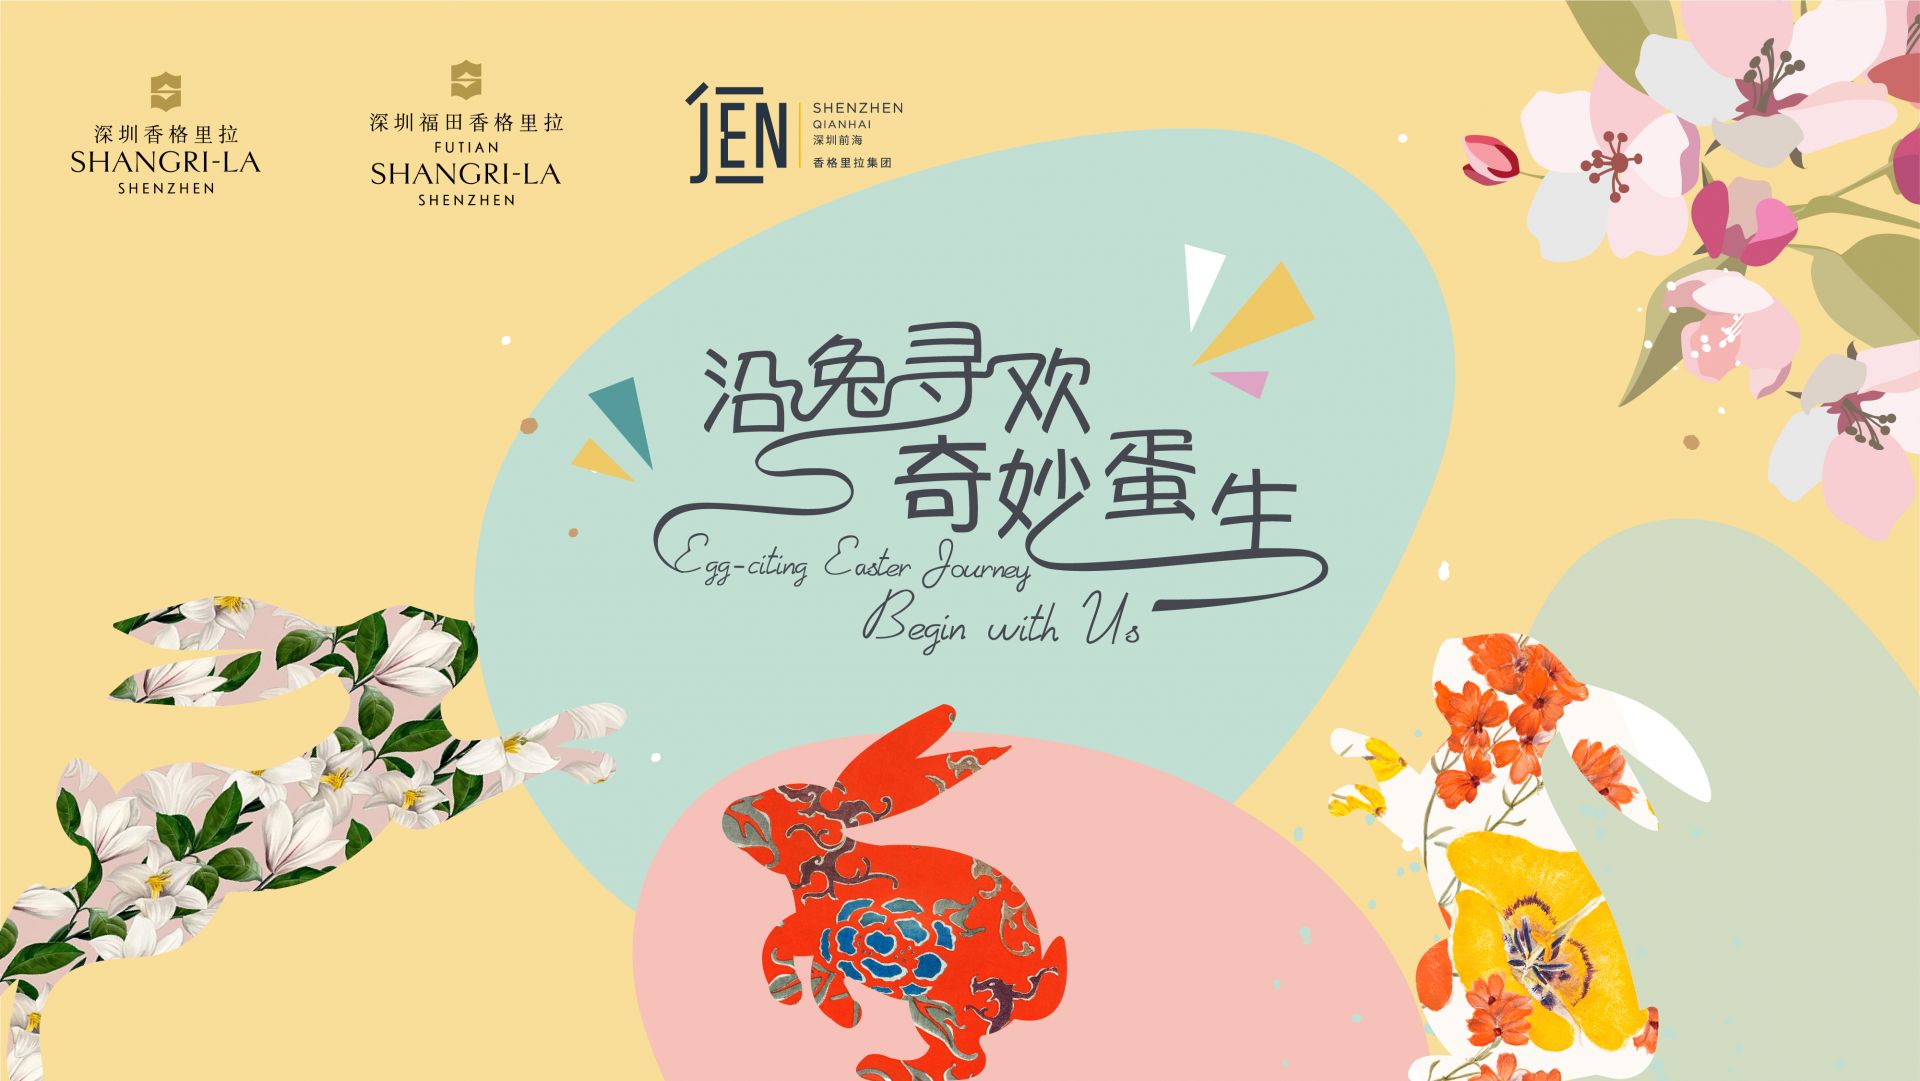 沿兔寻欢 奇妙蛋生  香格里拉集团深圳区域三家酒店为宾客带来复活节假期礼遇